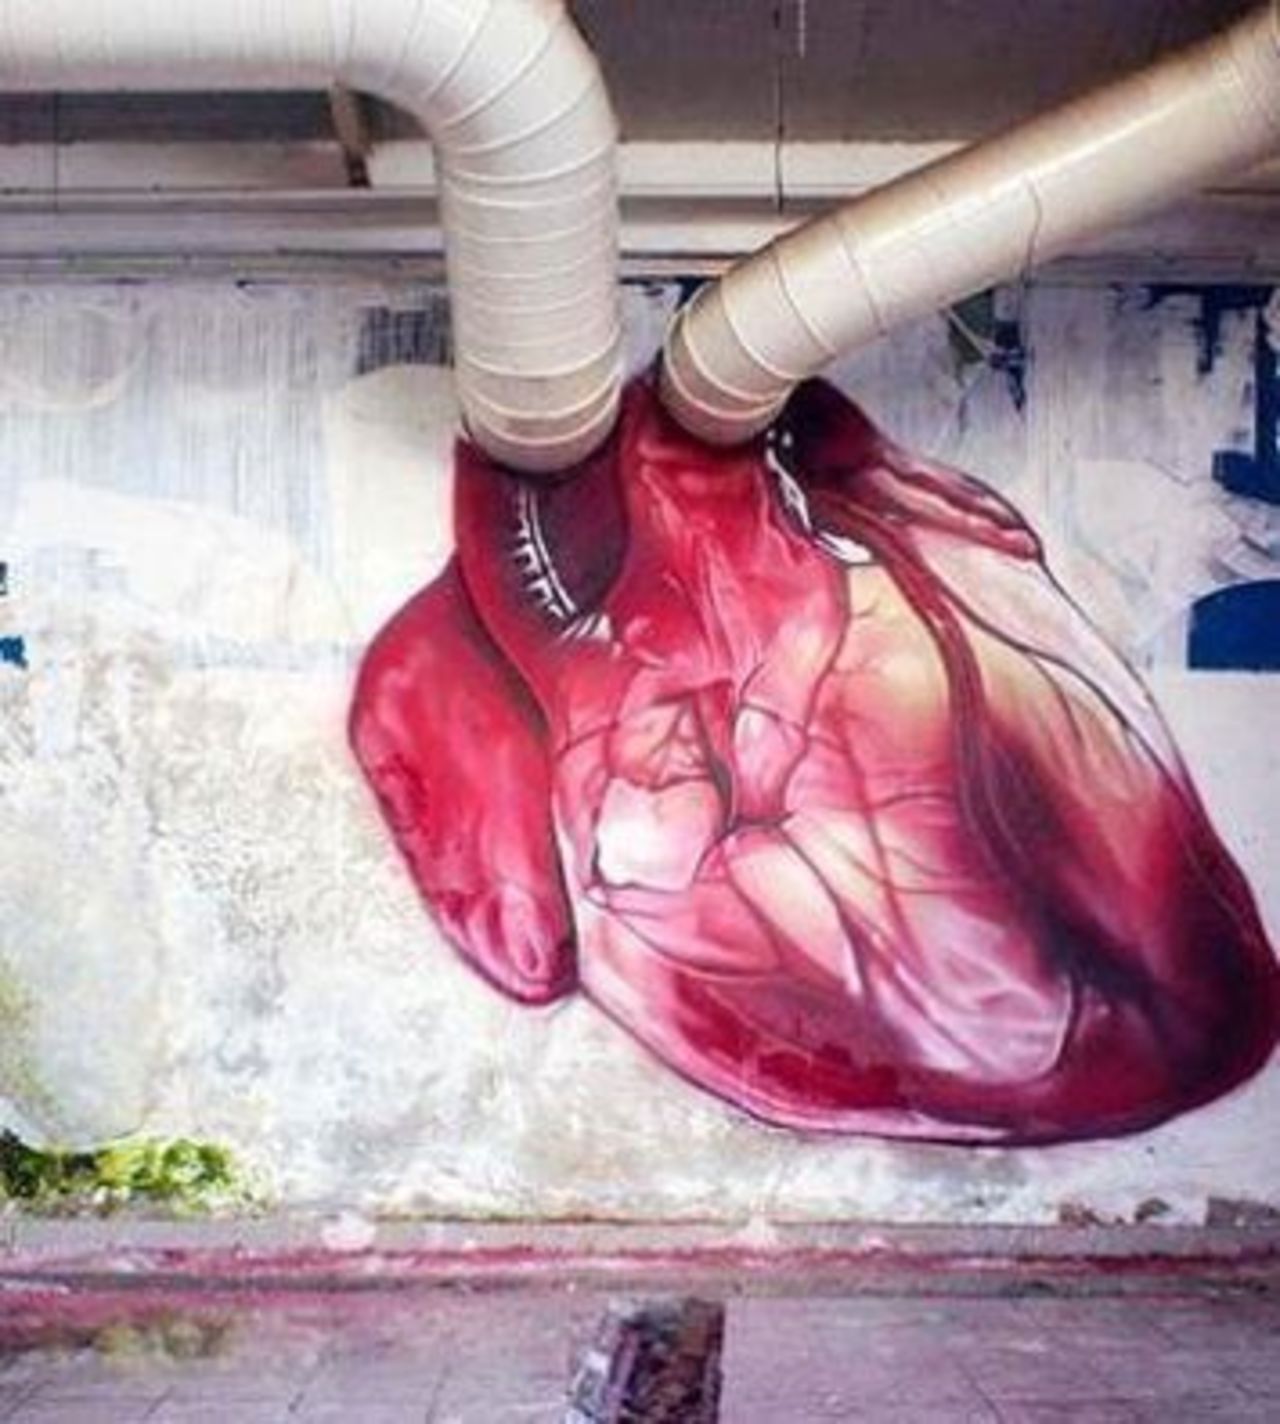 #Heart – Creative #Streetart | Be ▲rtist - Be ▲rt https://beartistbeart.com/2016/08/22/heart-creative-streetart/?utm_campaign=crowdfire&utm_content=crowdfire&utm_medium=social&utm_source=twitter https://t.co/sdjngkvaH0